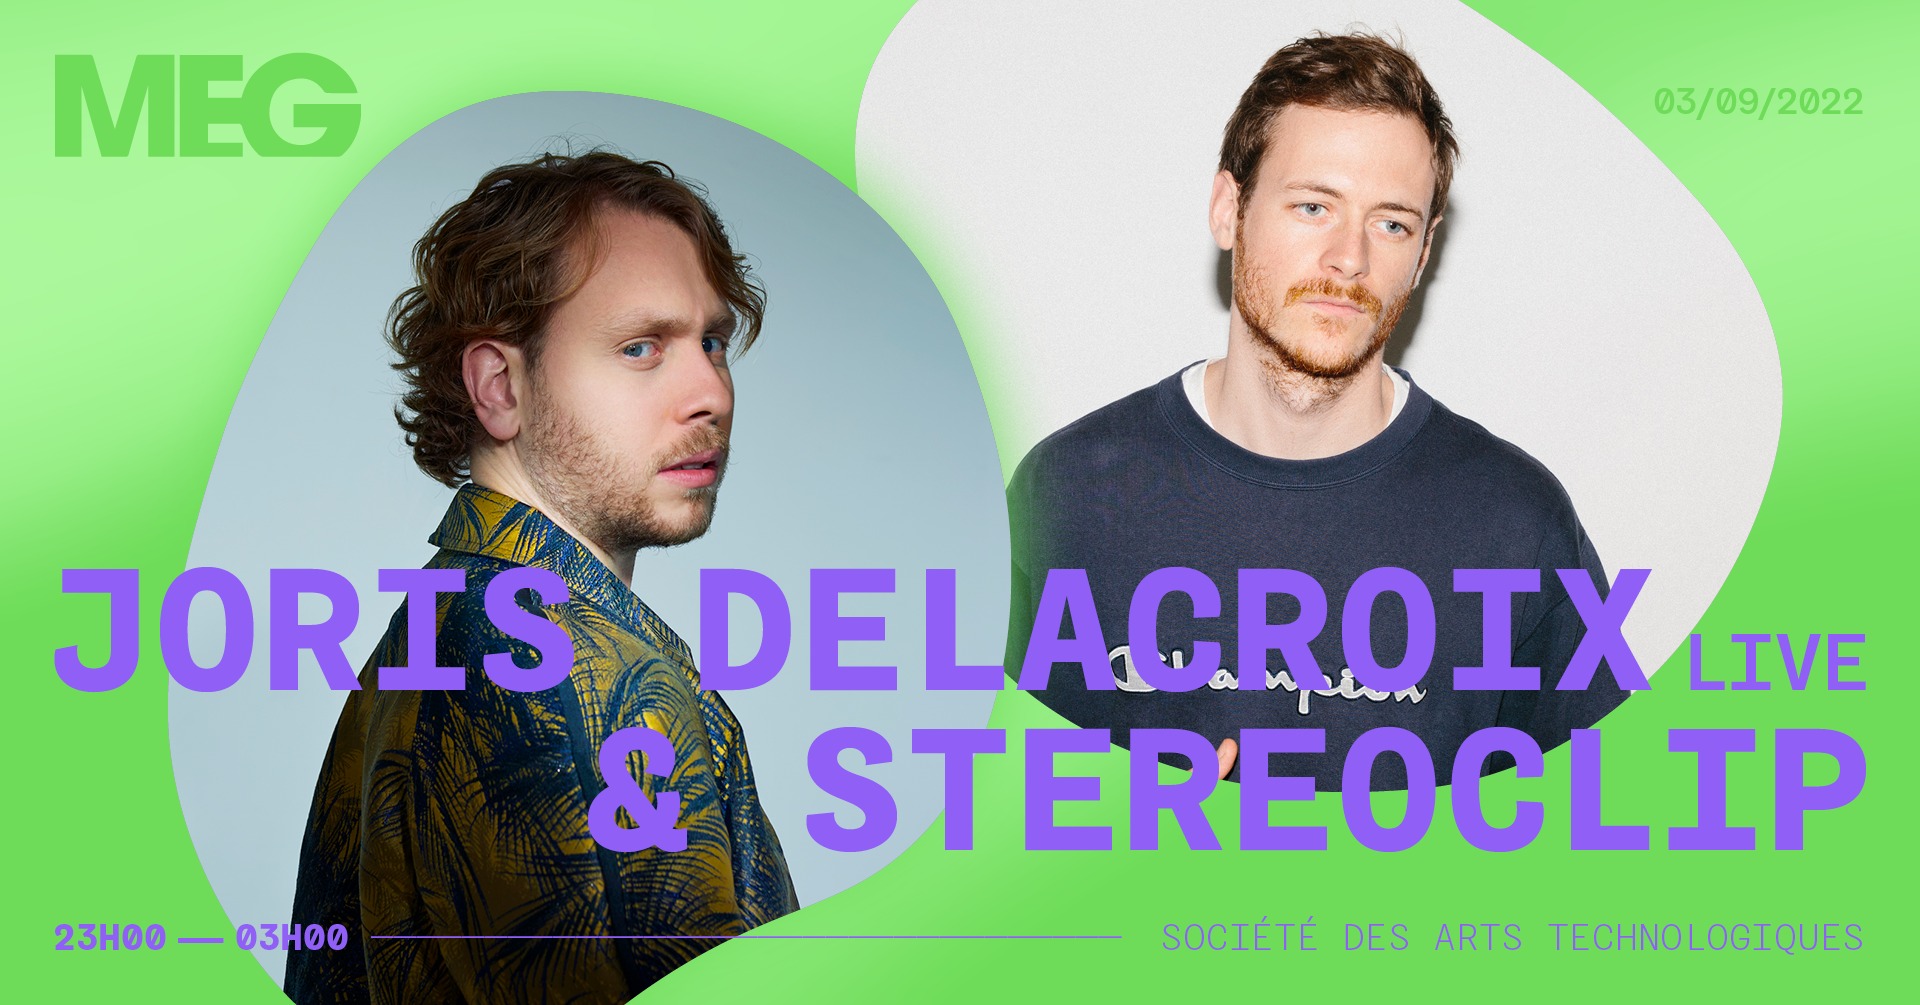 Festival MEG Joris Delacroix (Live) & Stereoclip 3 Septembre 2022 Montreal, QC